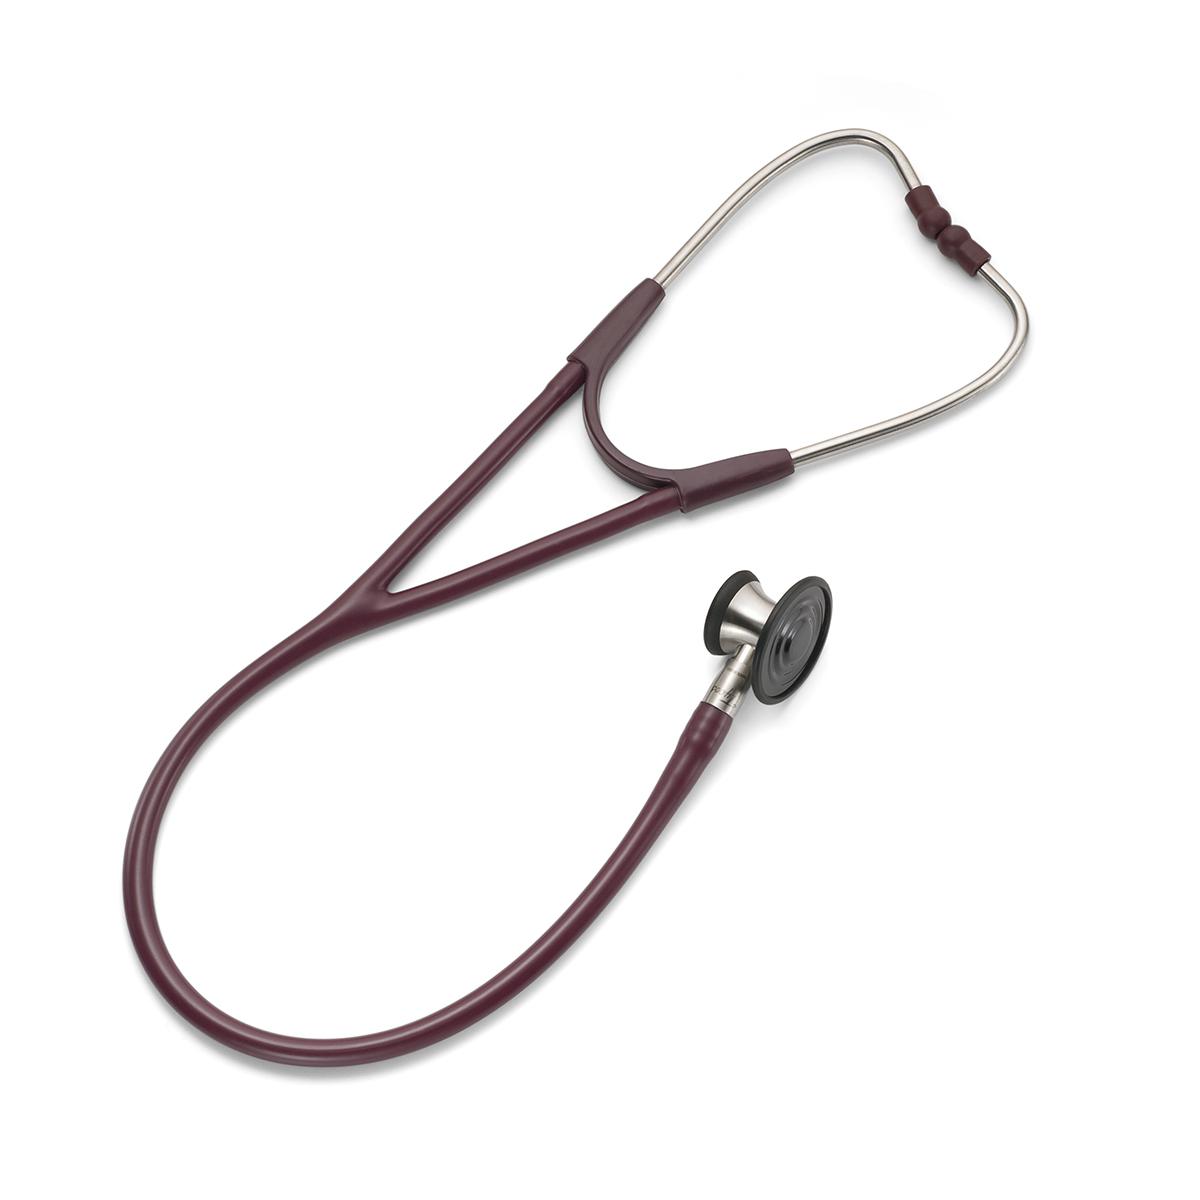 Stetoskop Welch Allyn Harvey Elite: weterynaryjny stetoskop z podwójną głowicą widzianą z boku, z podkreśleniem lejka i płaskich boków.